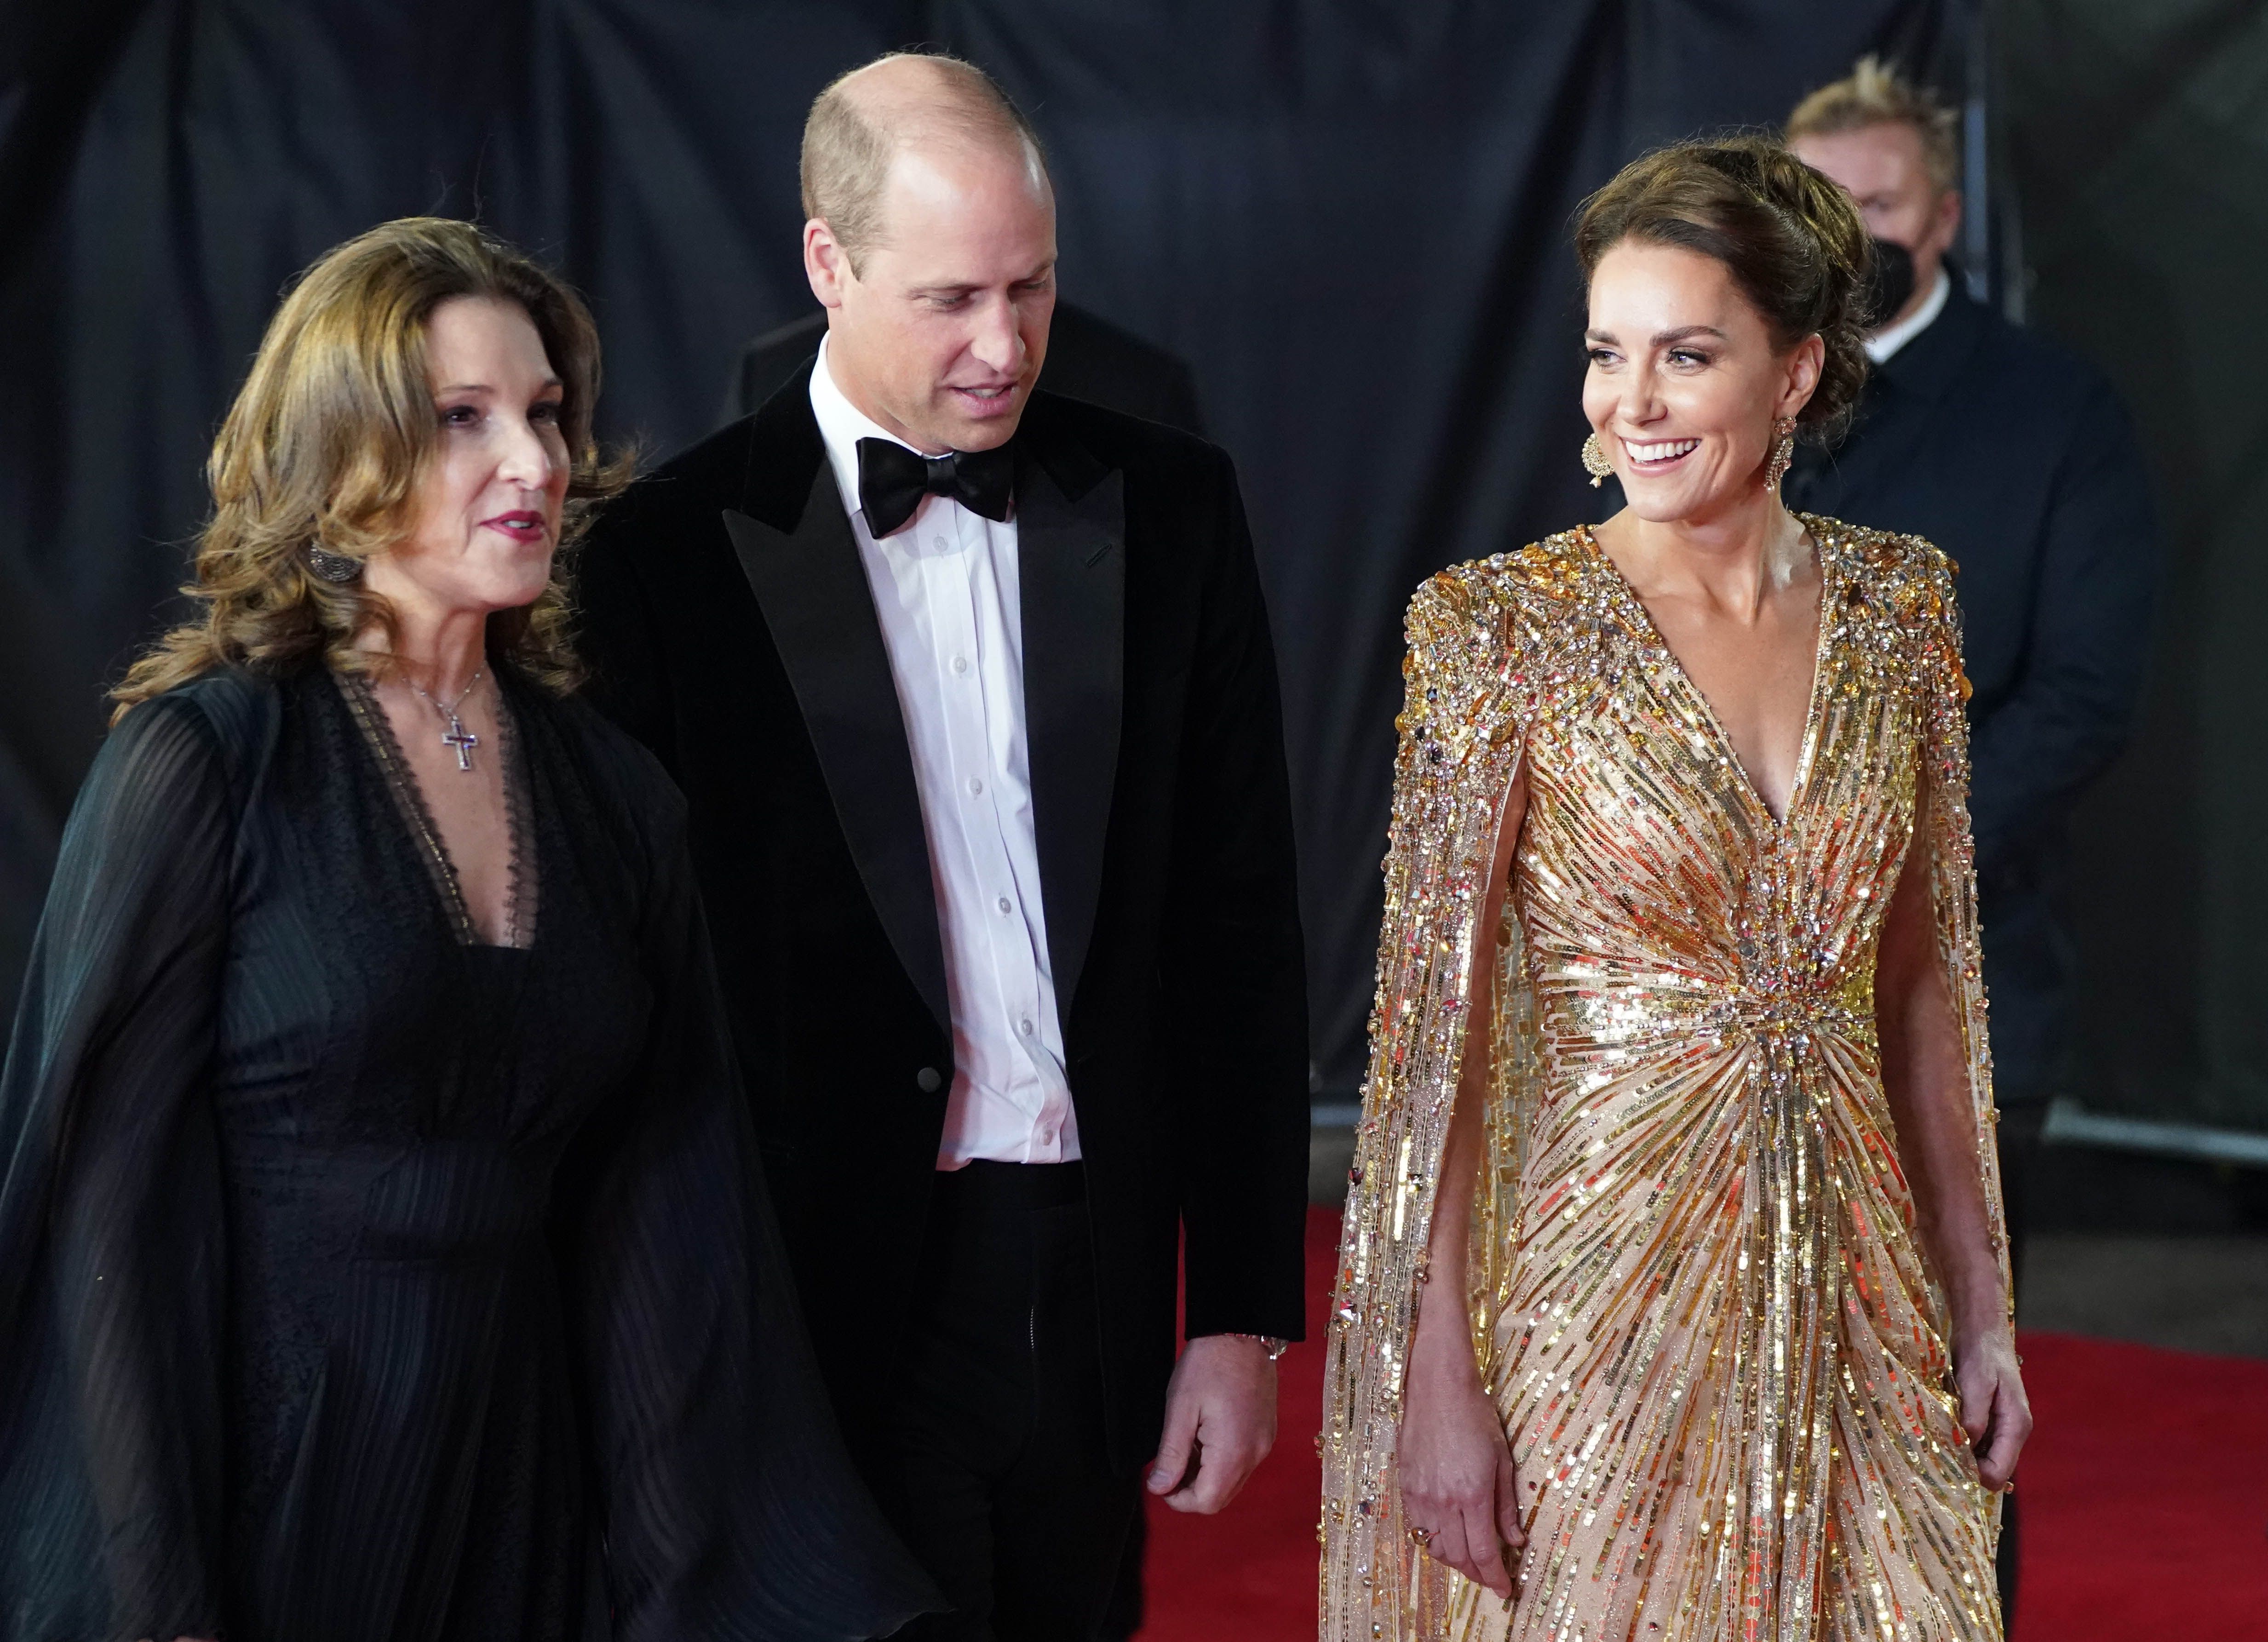 Svi pogledi usmjereni prema Kate Middleton: Vojvotkinja je zablistala u jednoj od najraskošnijih haljina